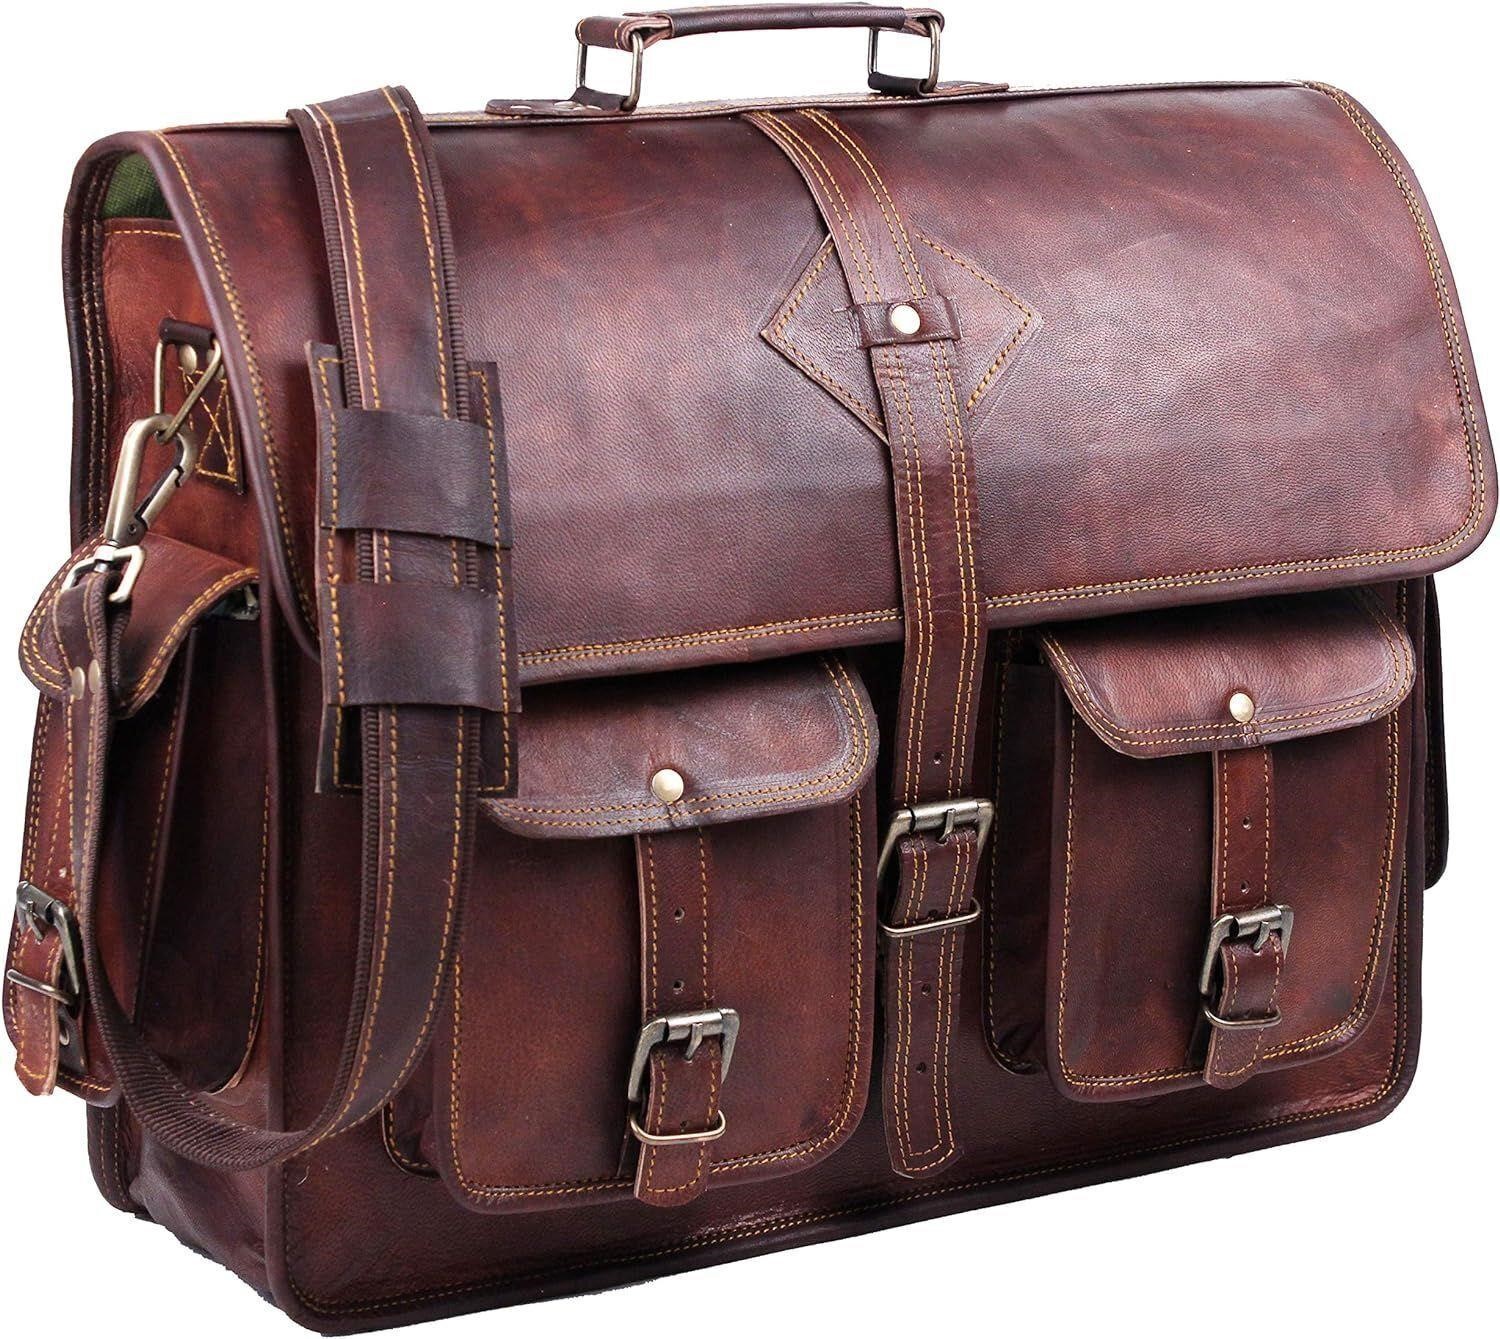 $120 Vintage Leather Laptop Bag for Men